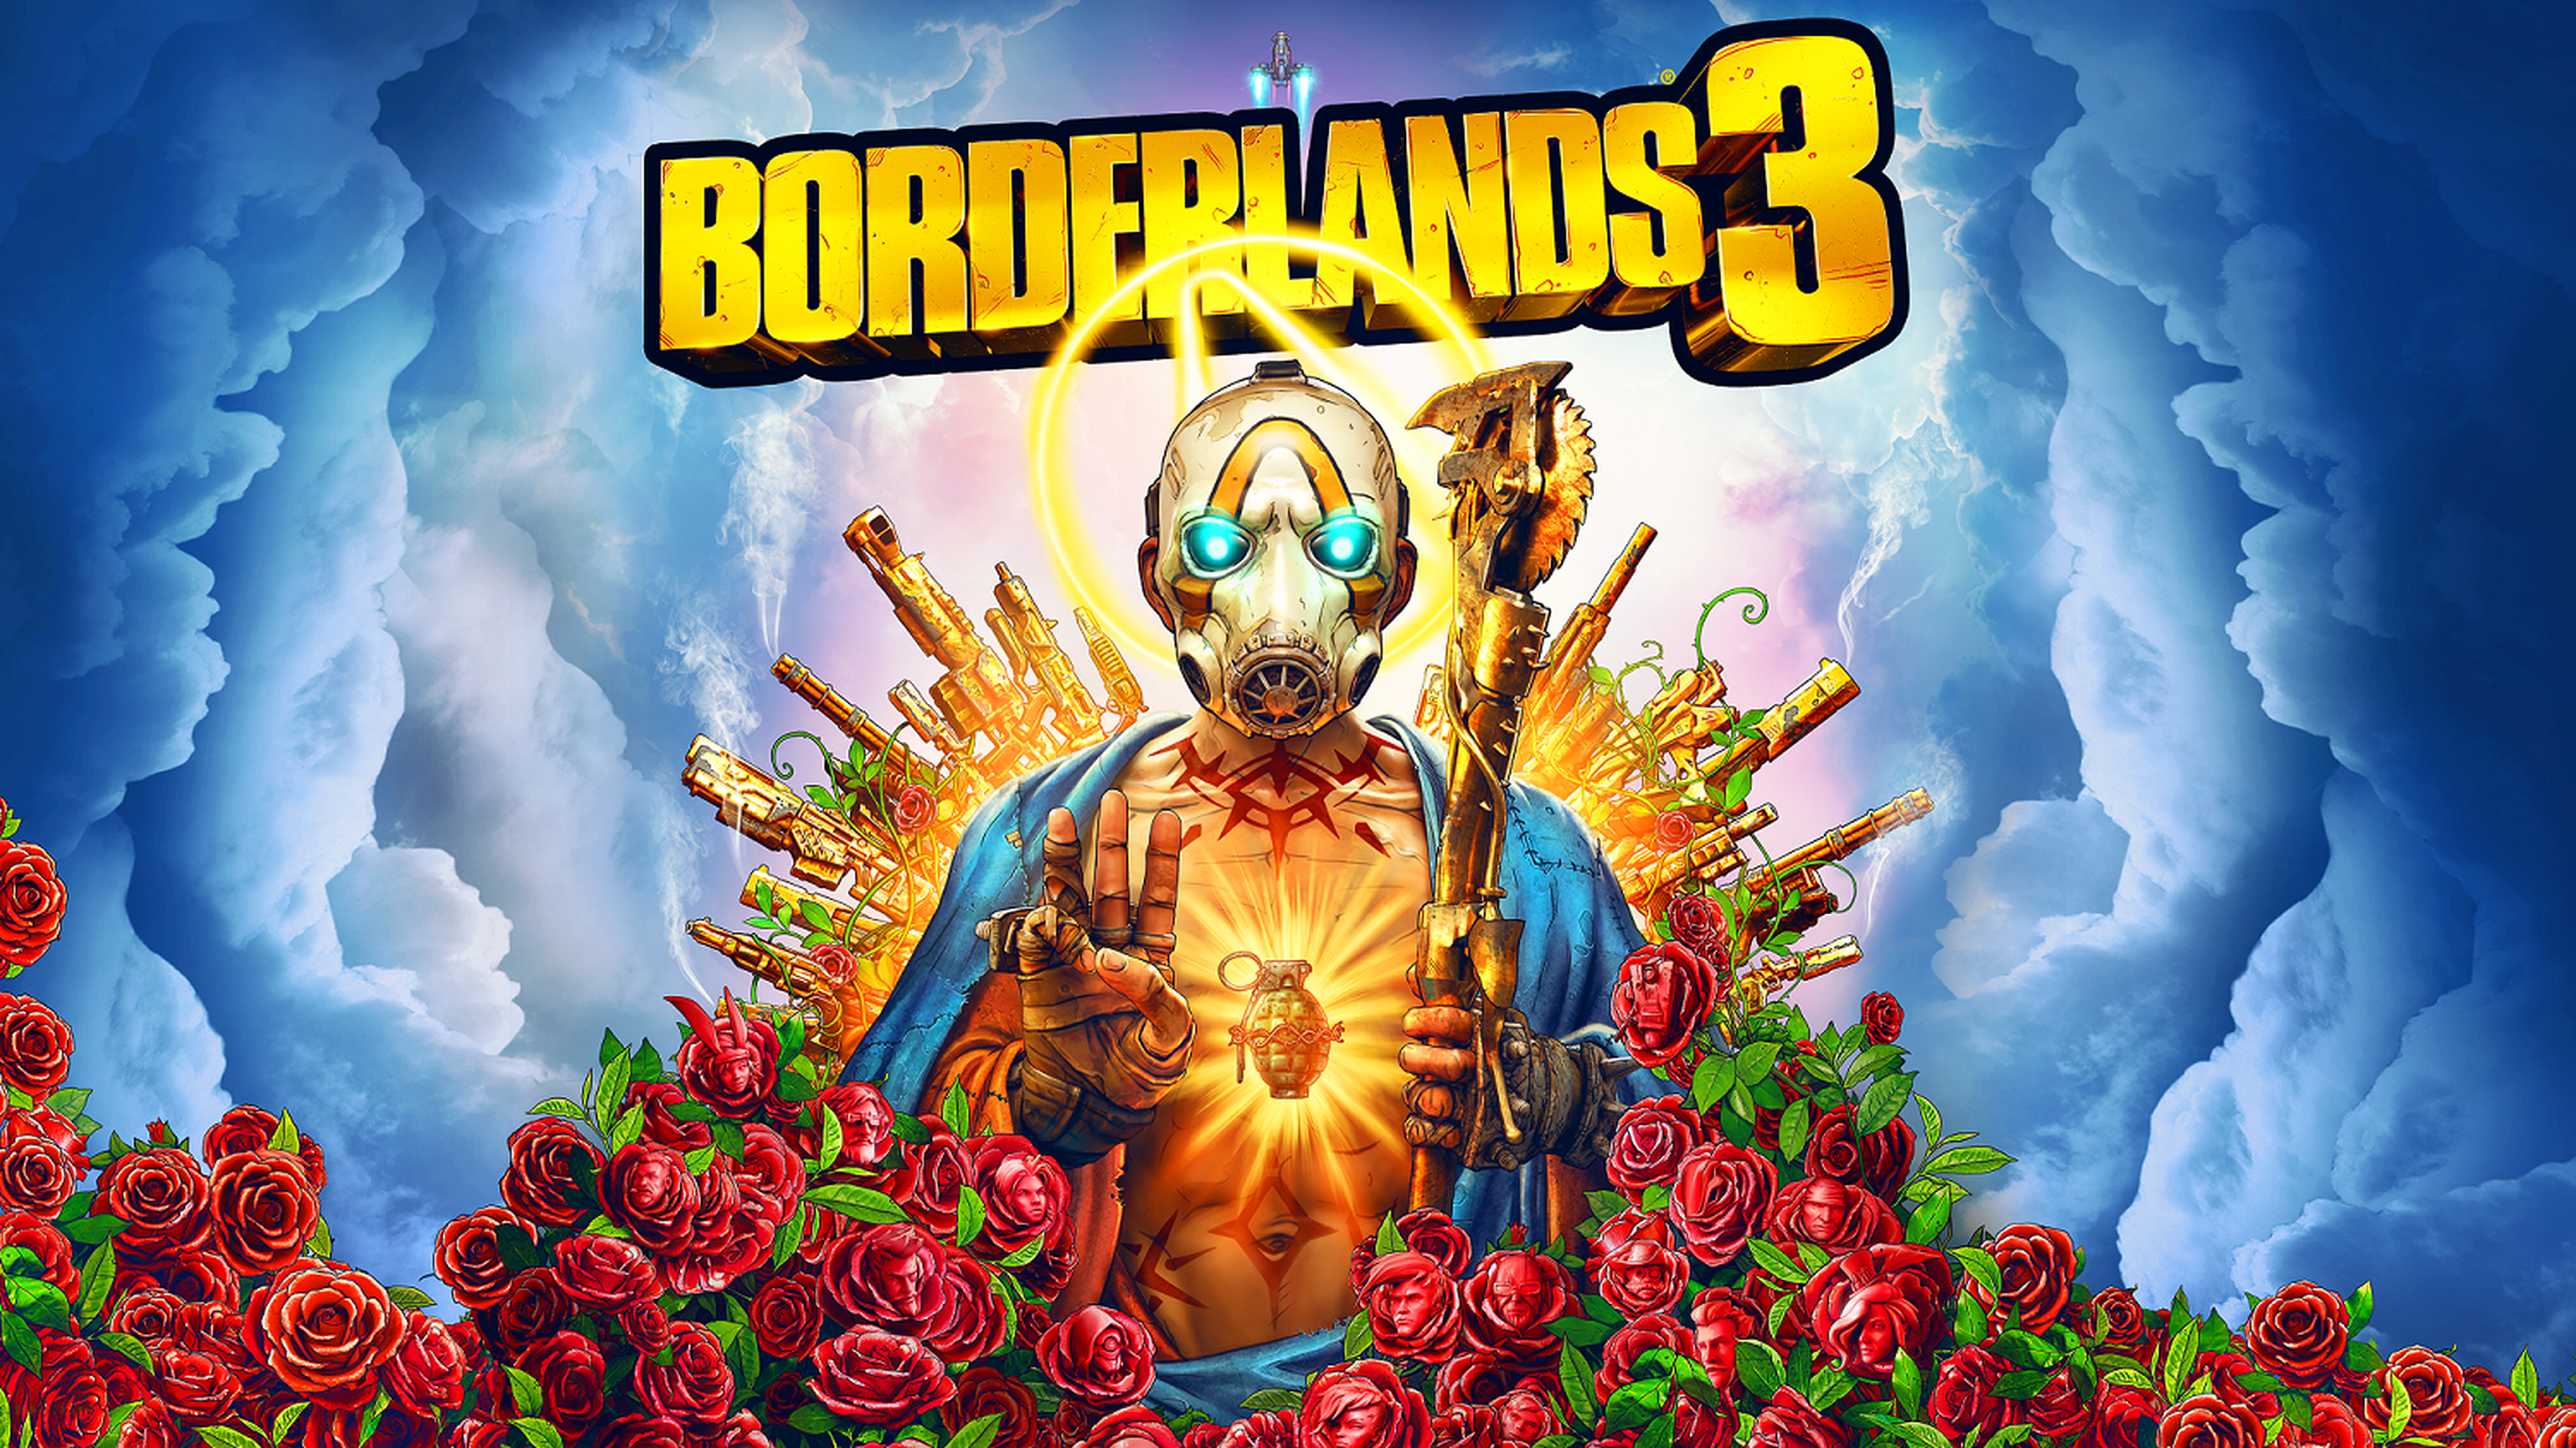 Impresiones de Borderlands 3 para PS4, Xbox One, PC y Stadia